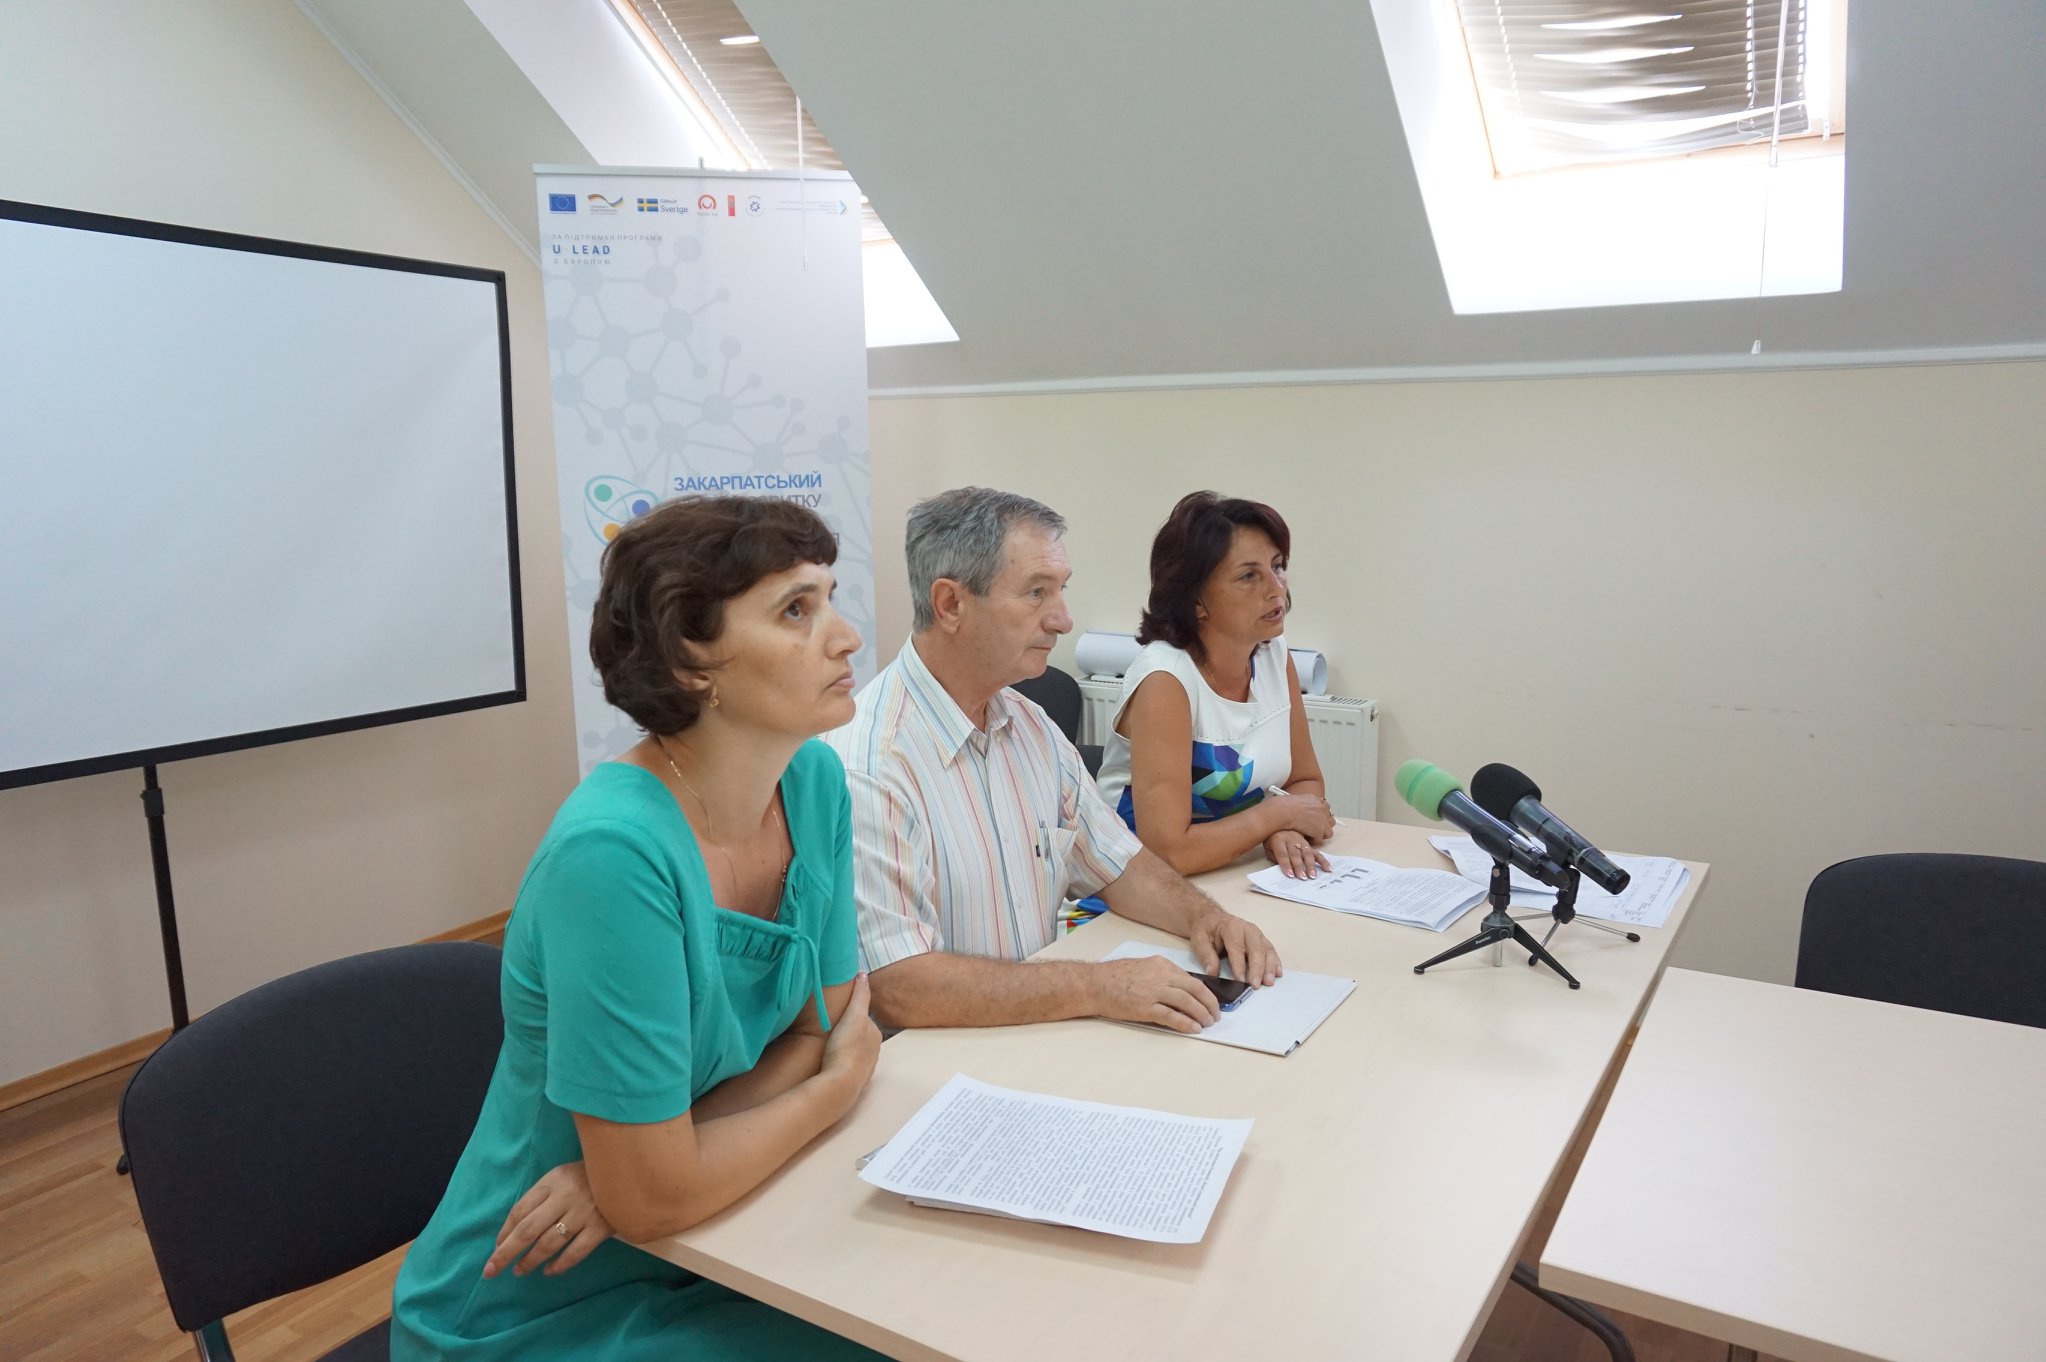 Фахівці підбили підсумки та розповіли про результати роботи «Нової української школи», яка стартувала минулого року.